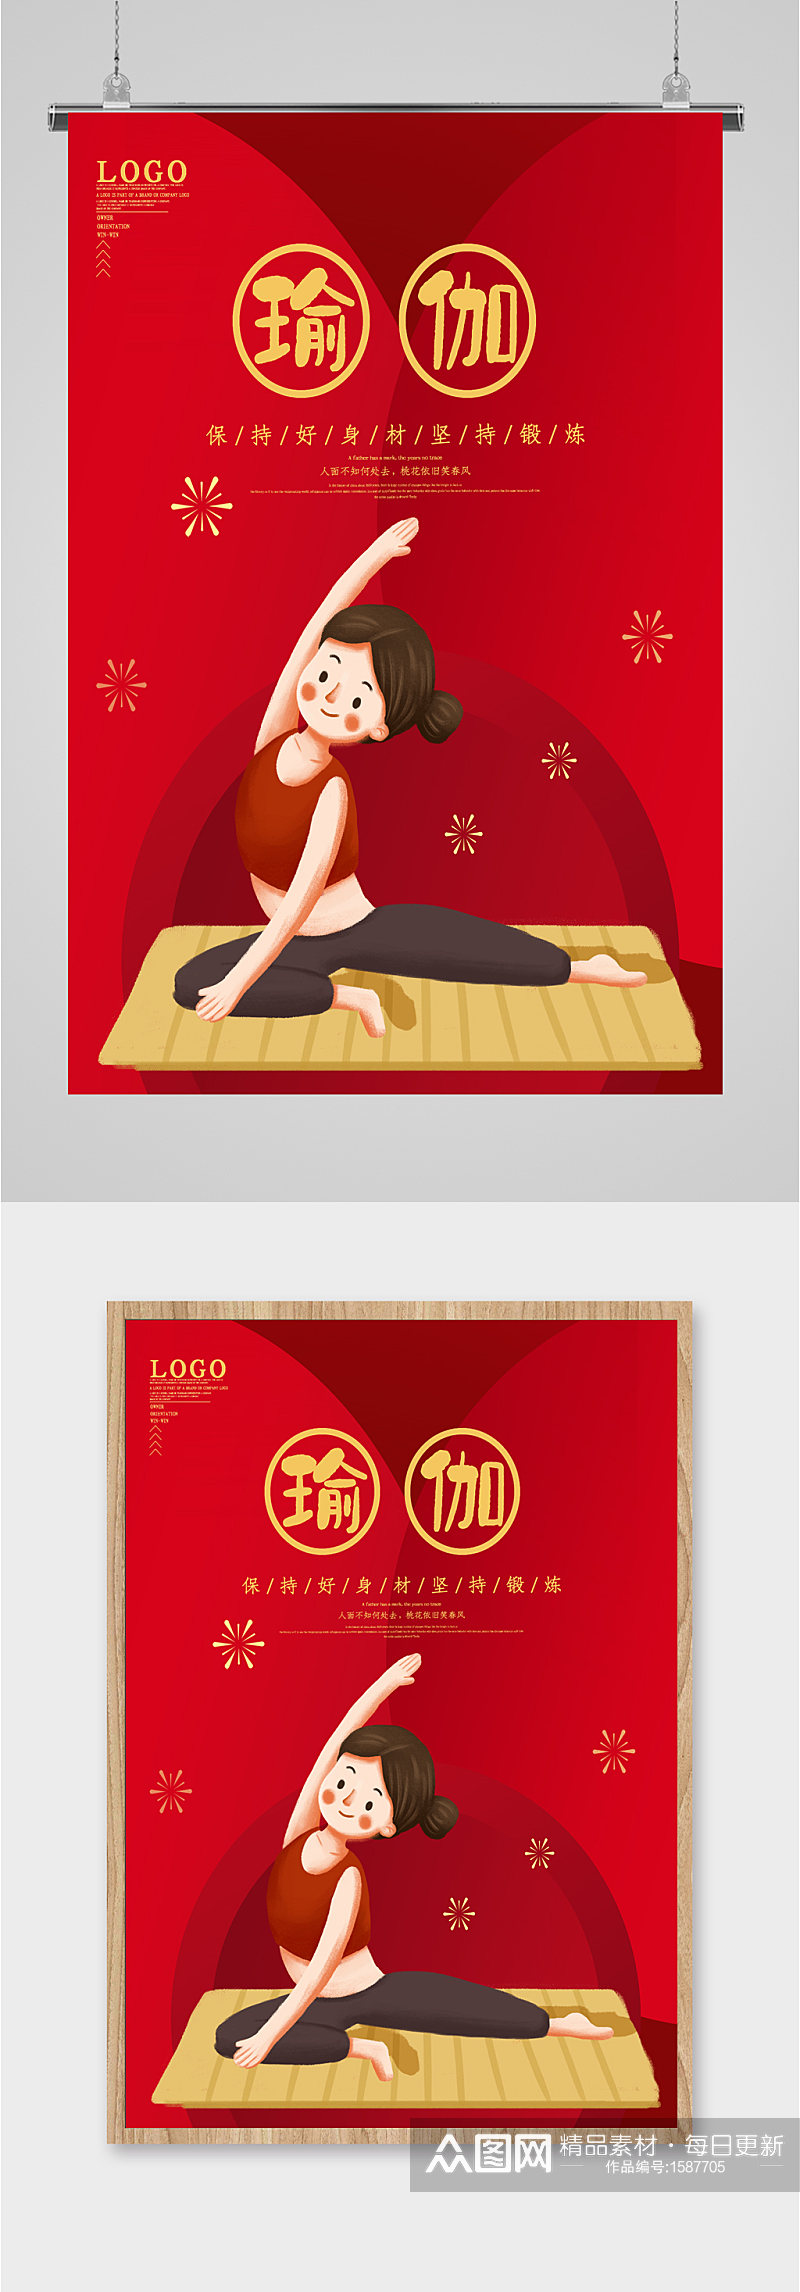 瑜伽健身塑形红色海报素材